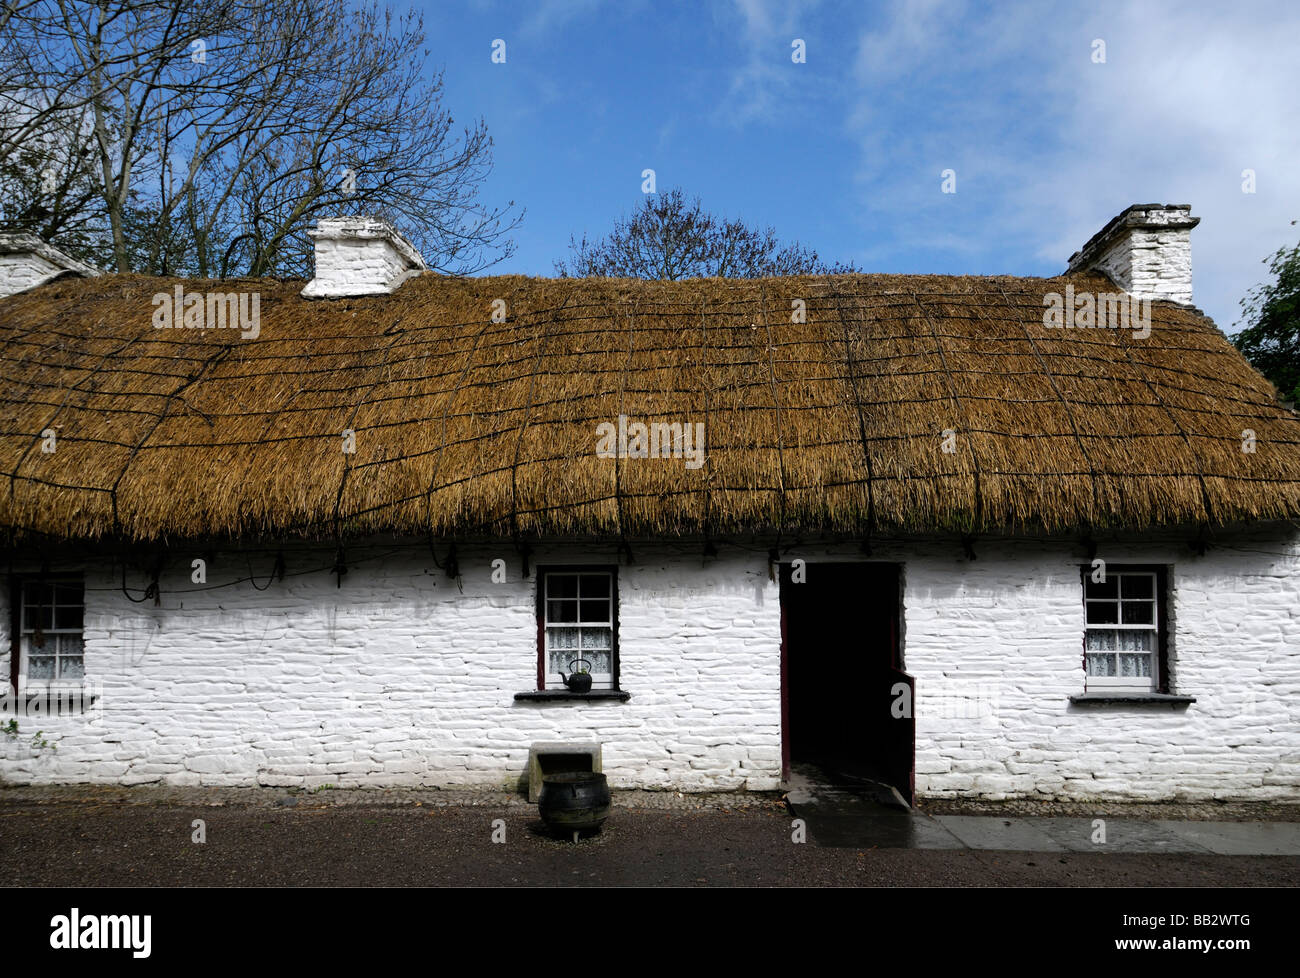 Cottage au toit de chaume avec porte en bois semi-ouverte de la fenêtre blanche maison traditionnelle en pierre peint en blanc ciel bleu l'Irlande Banque D'Images